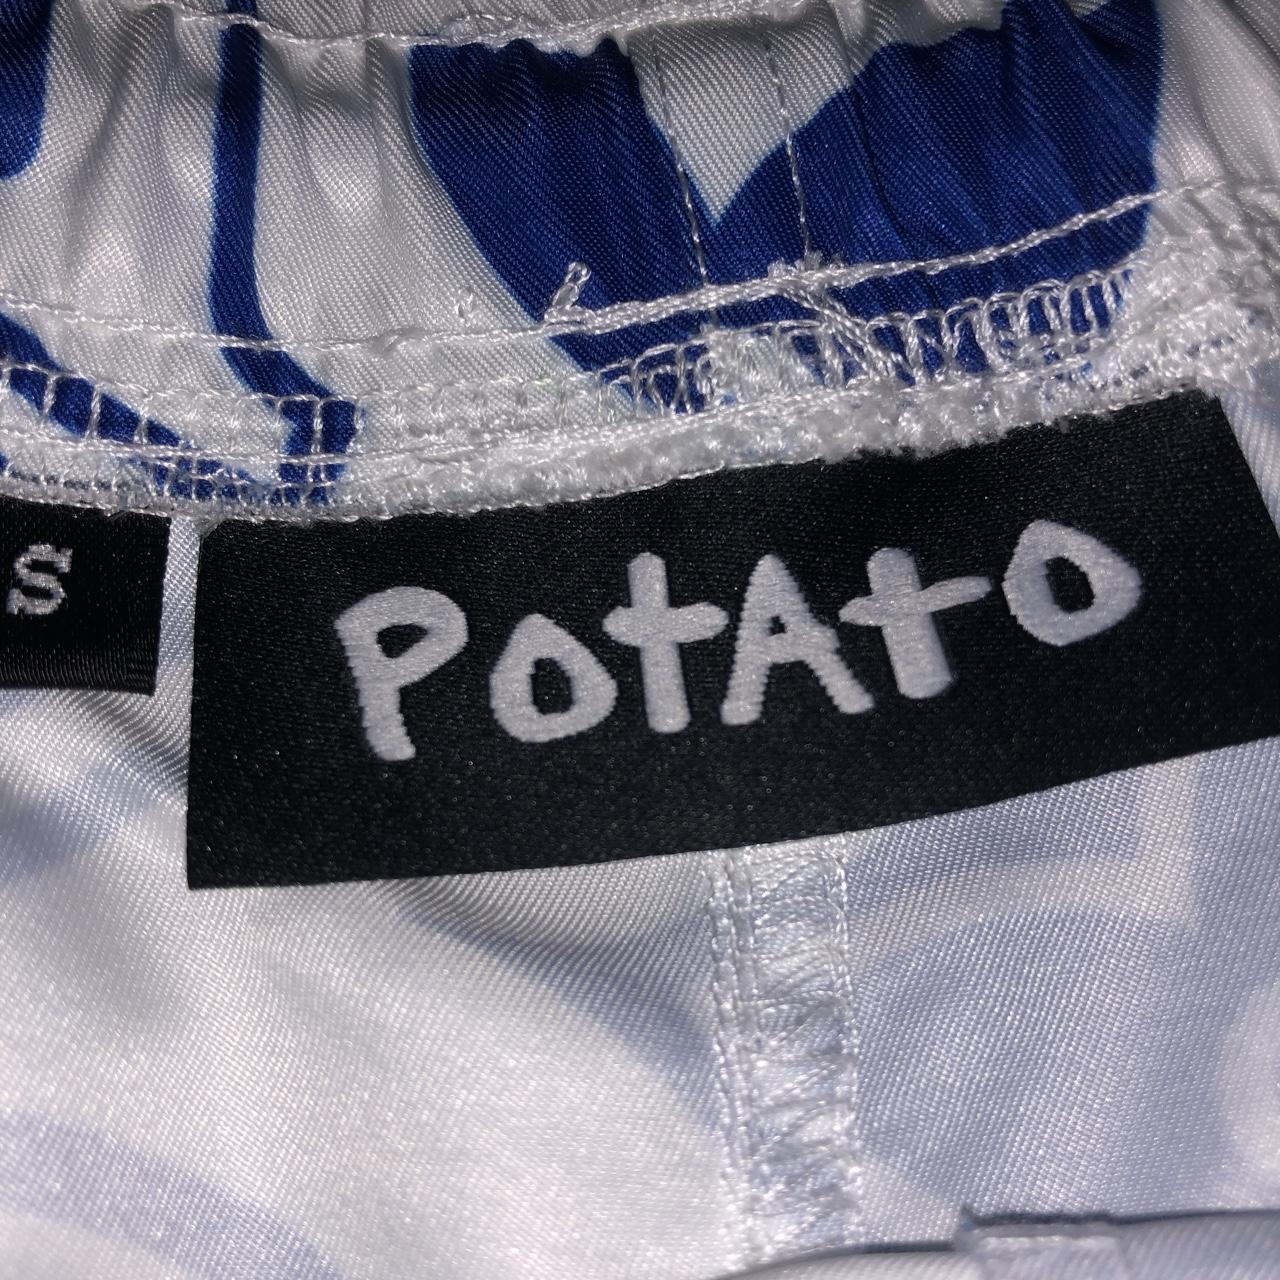 Imran potato Orlando LV shorts, #imranpotato